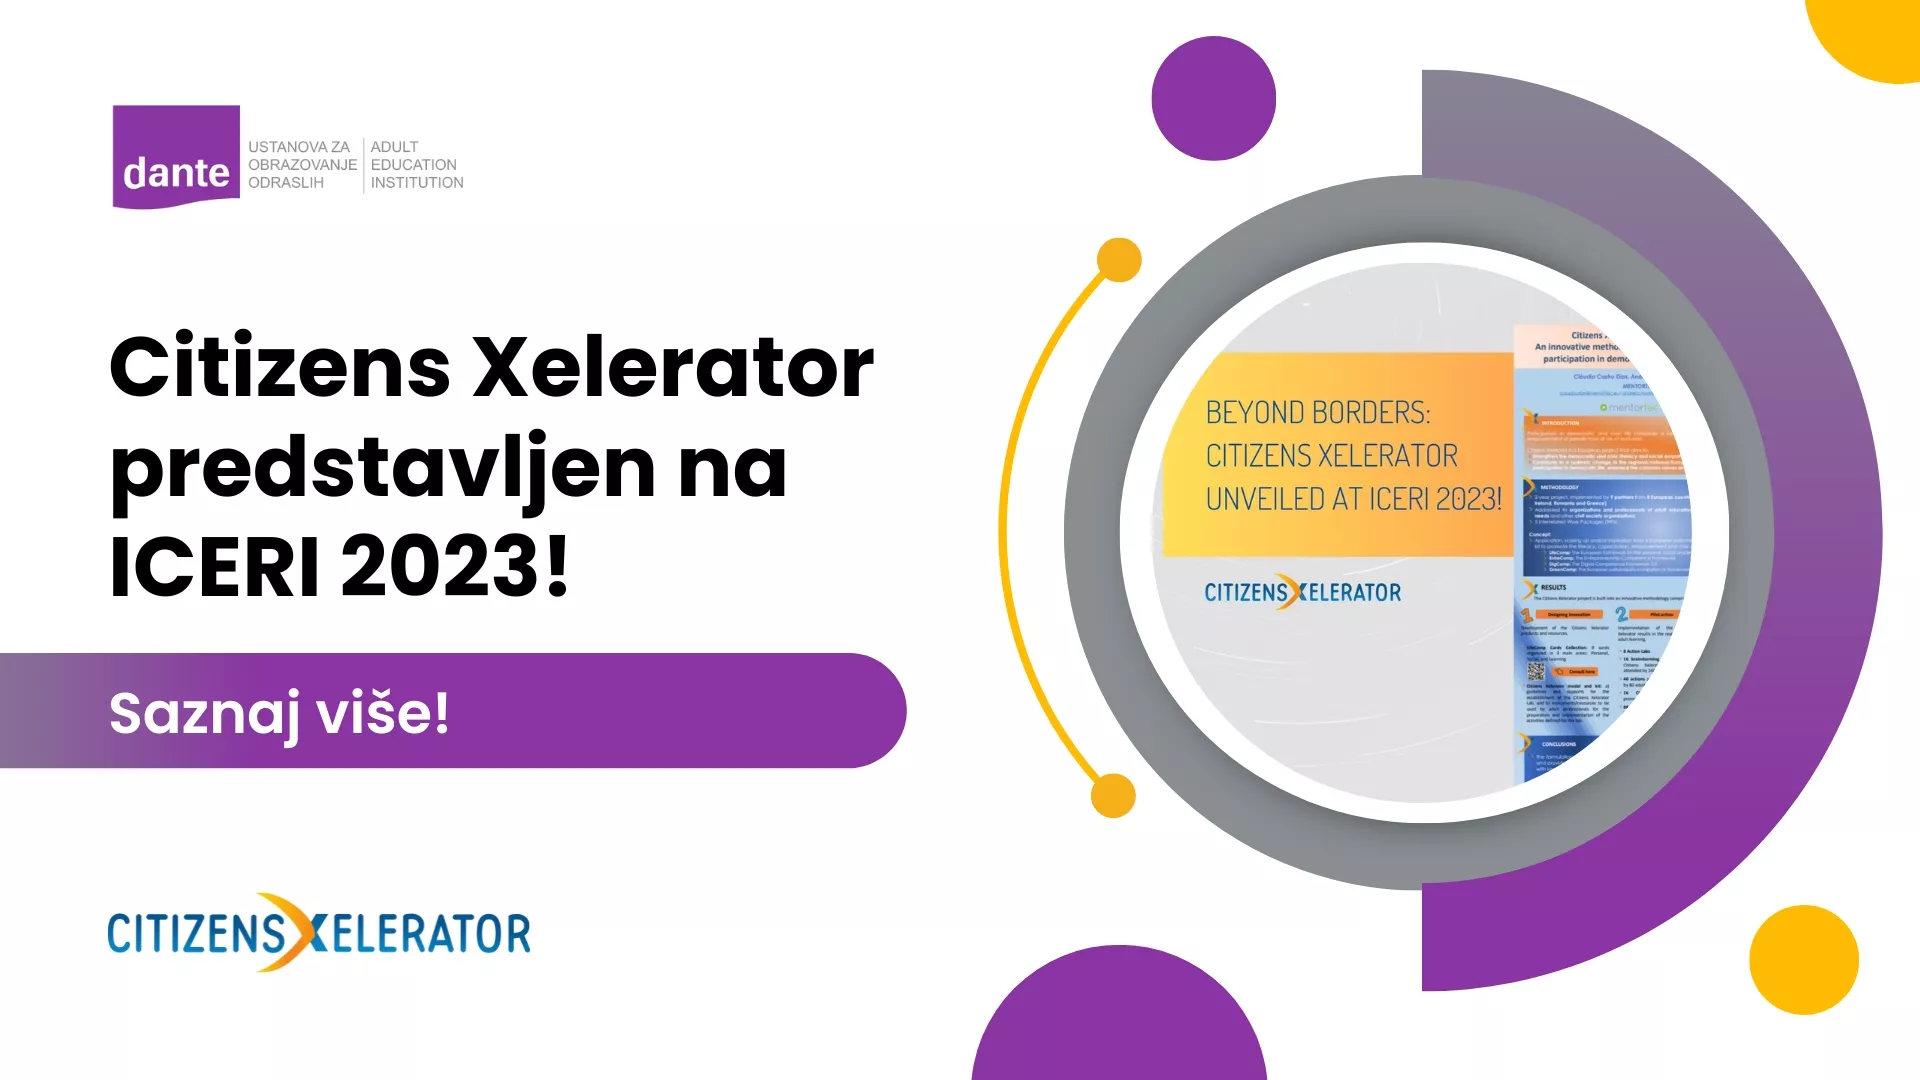 Citizens Xelerator predstavljen na ICERI 2023.